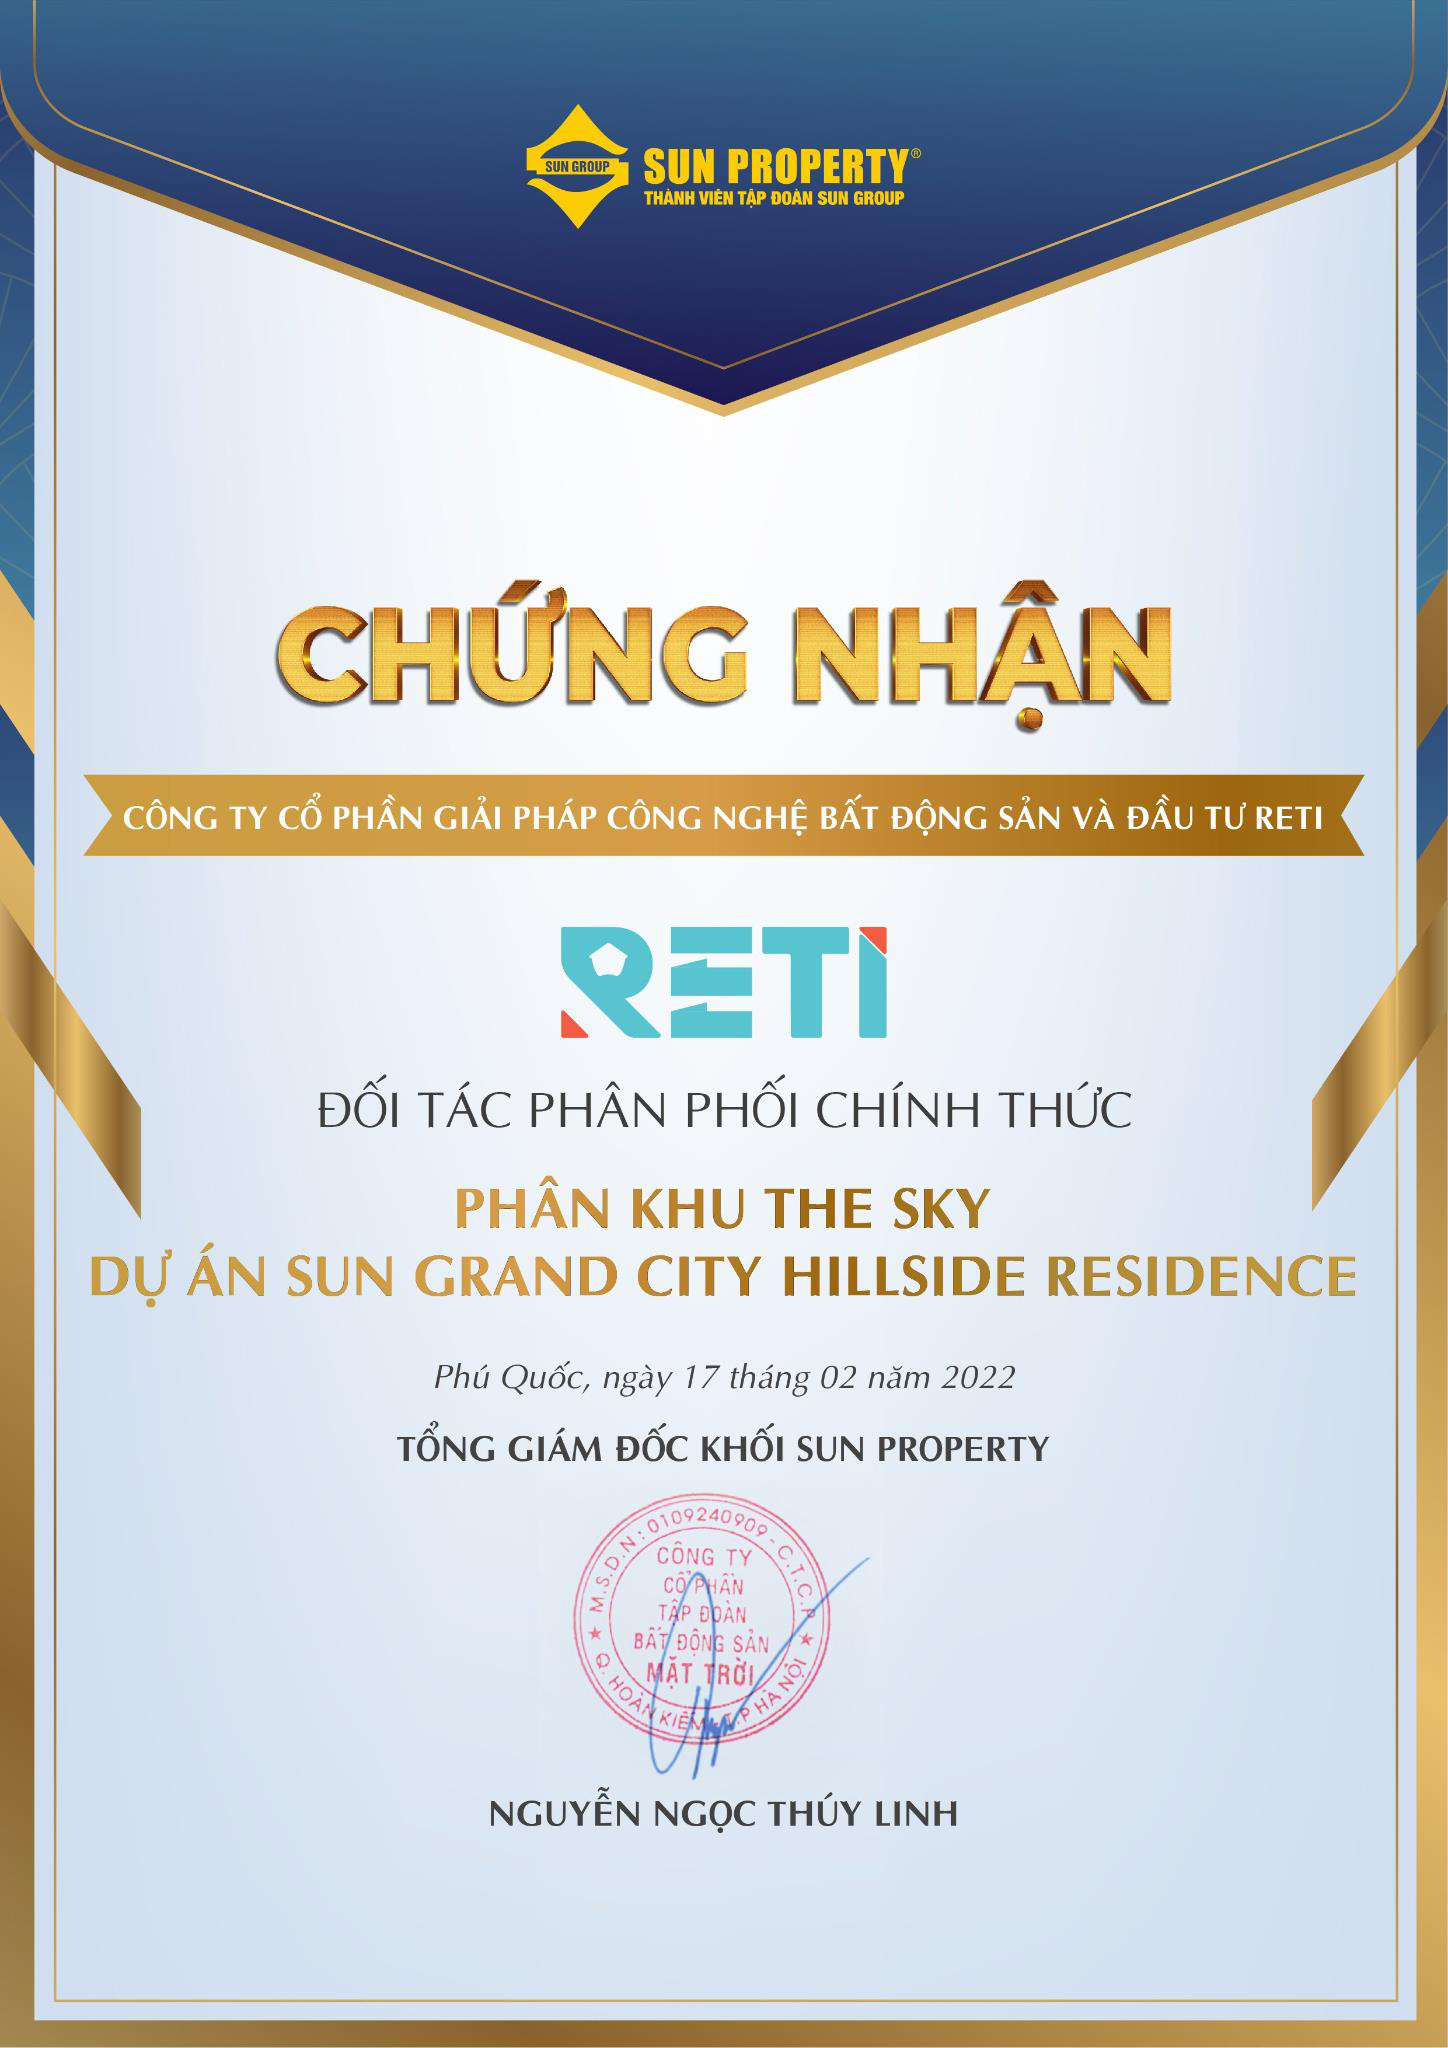 RETI phân phối chính thức phân khu The Sky - Sun Grand City Hillside Residence - Ảnh 1.